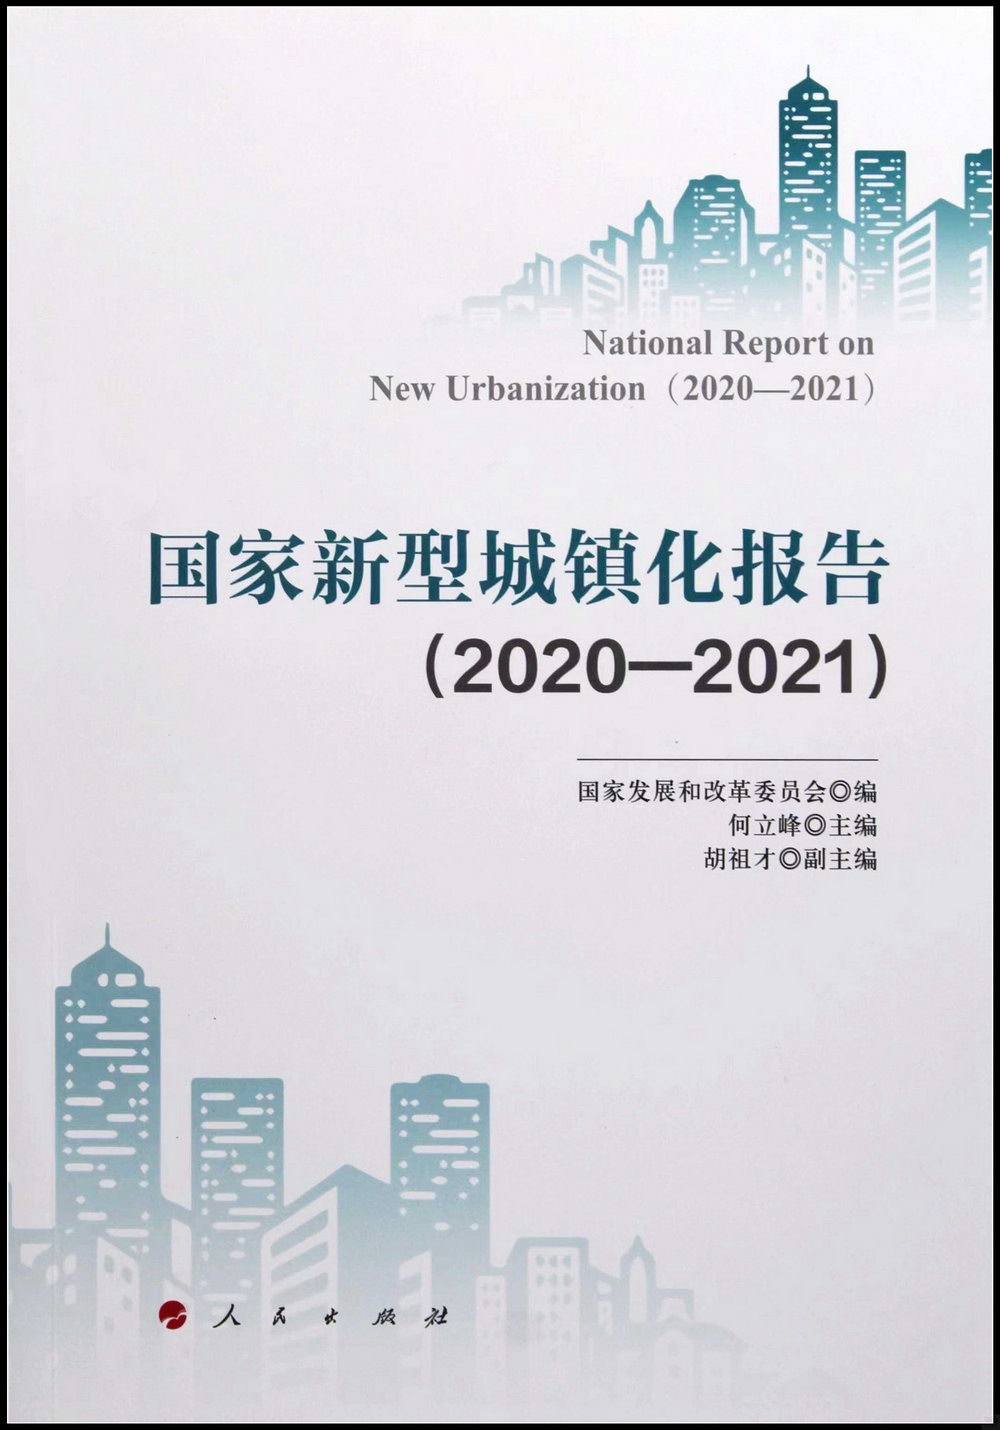 國家新型城鎮化報告（2020-2021）